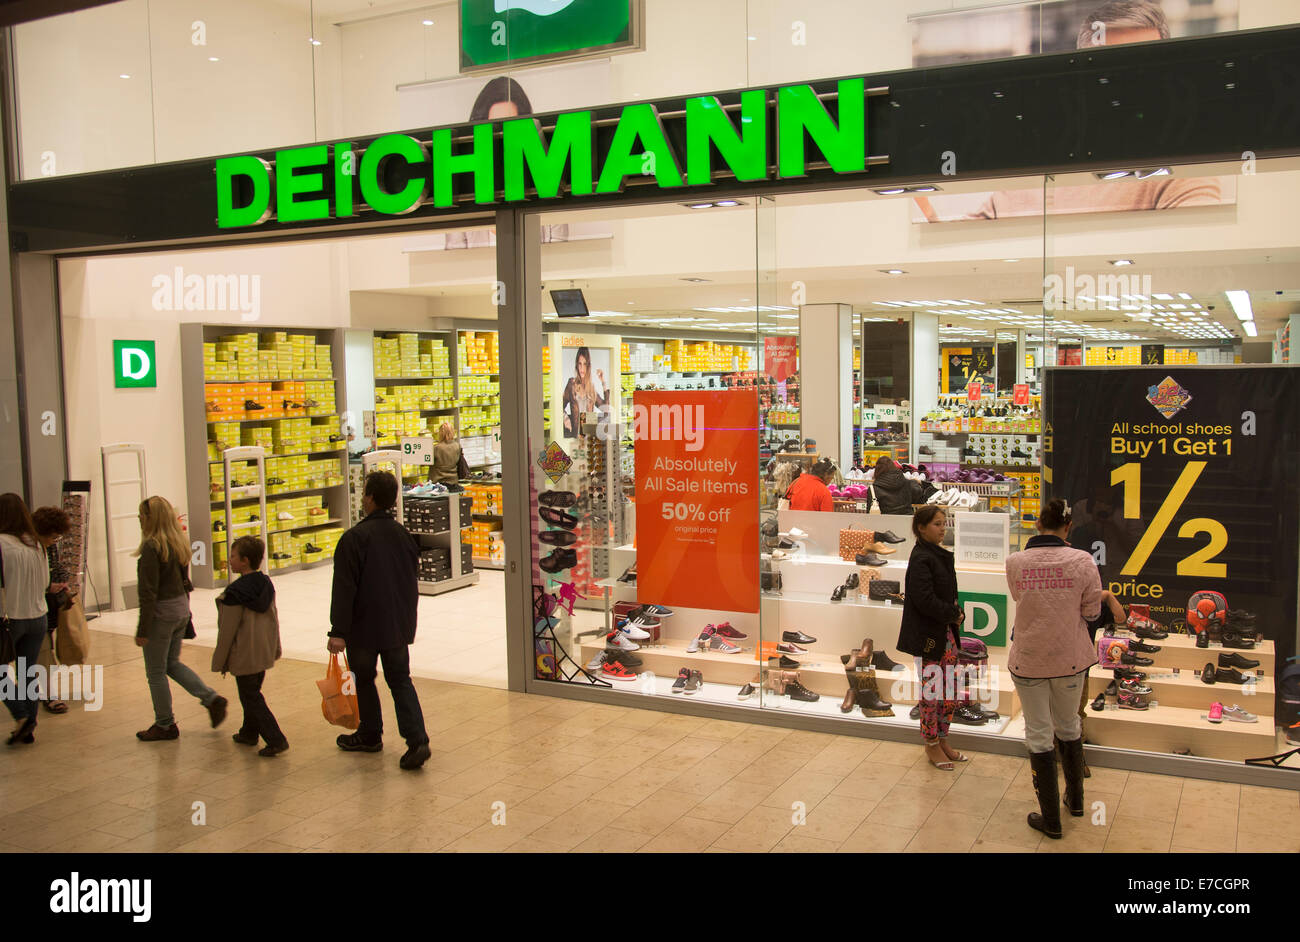 Deichmann-Schuh-Shop im Stadtzentrum von Blackpool UK Stockfotografie -  Alamy